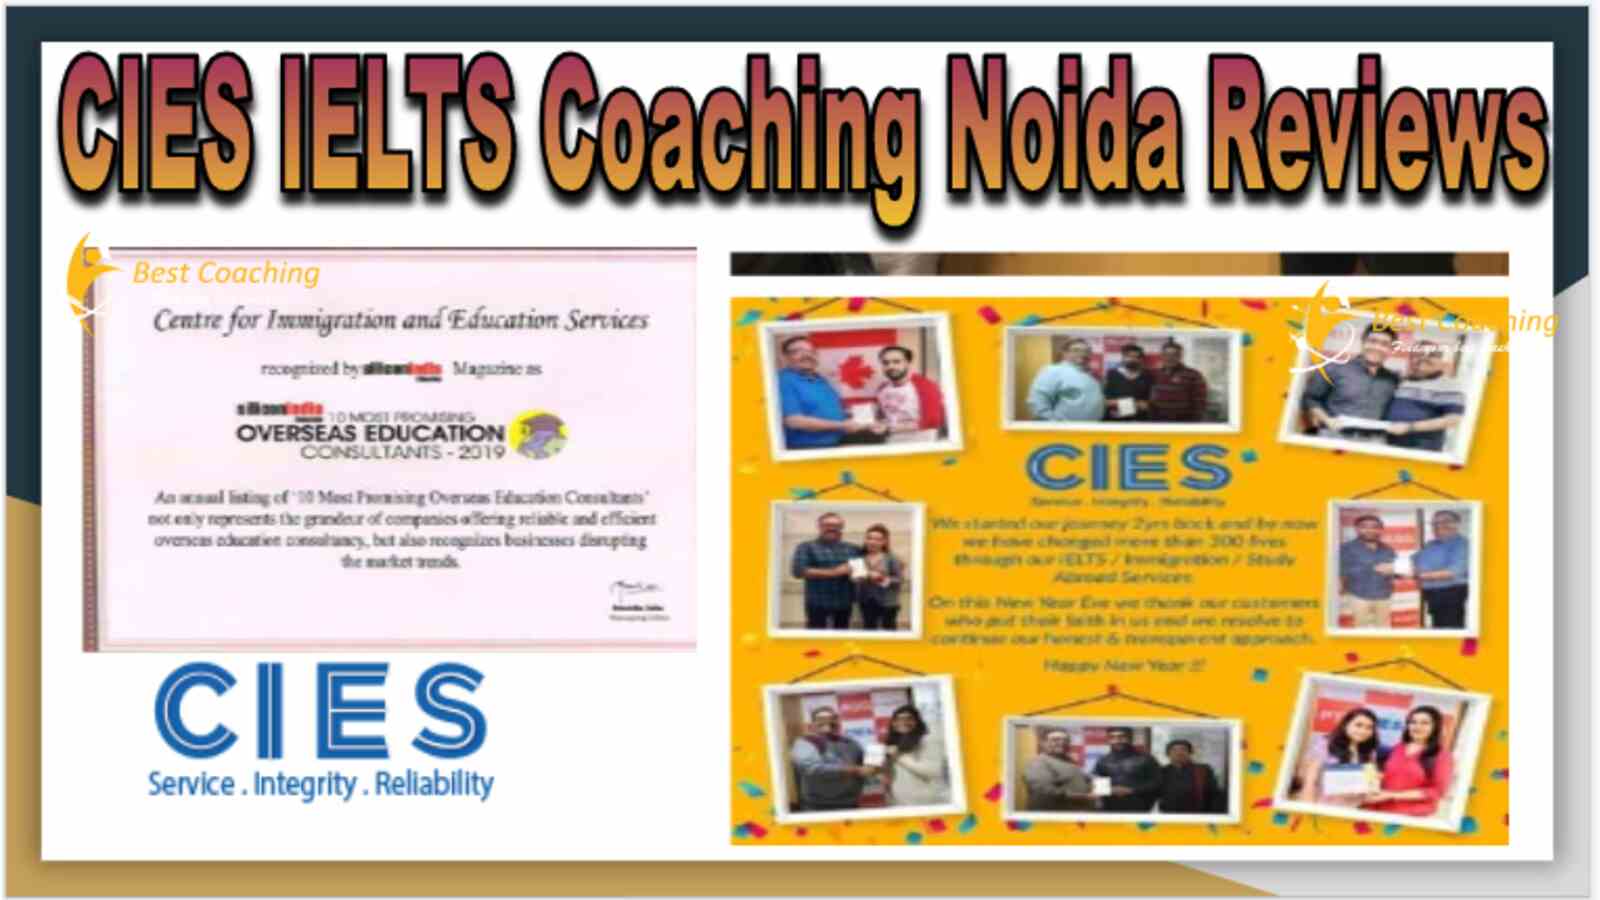 CIES IELTS Coaching Noida Reviews